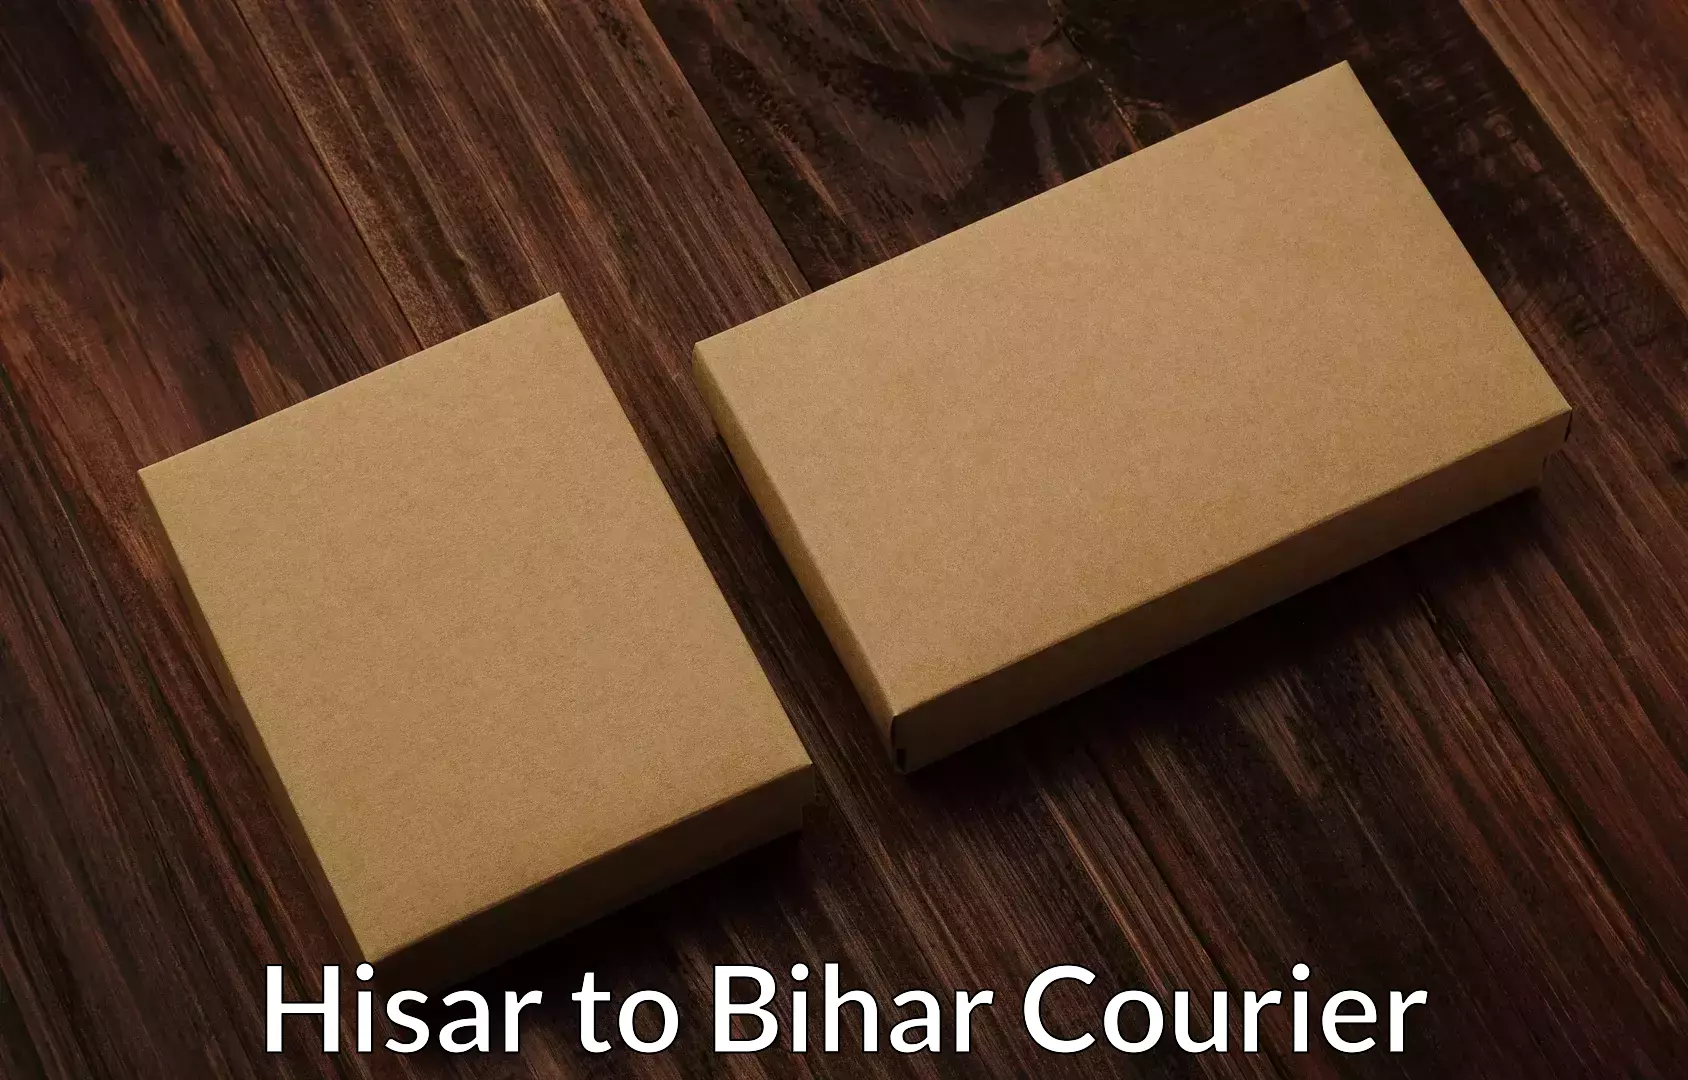 Budget-friendly movers Hisar to Saraiya